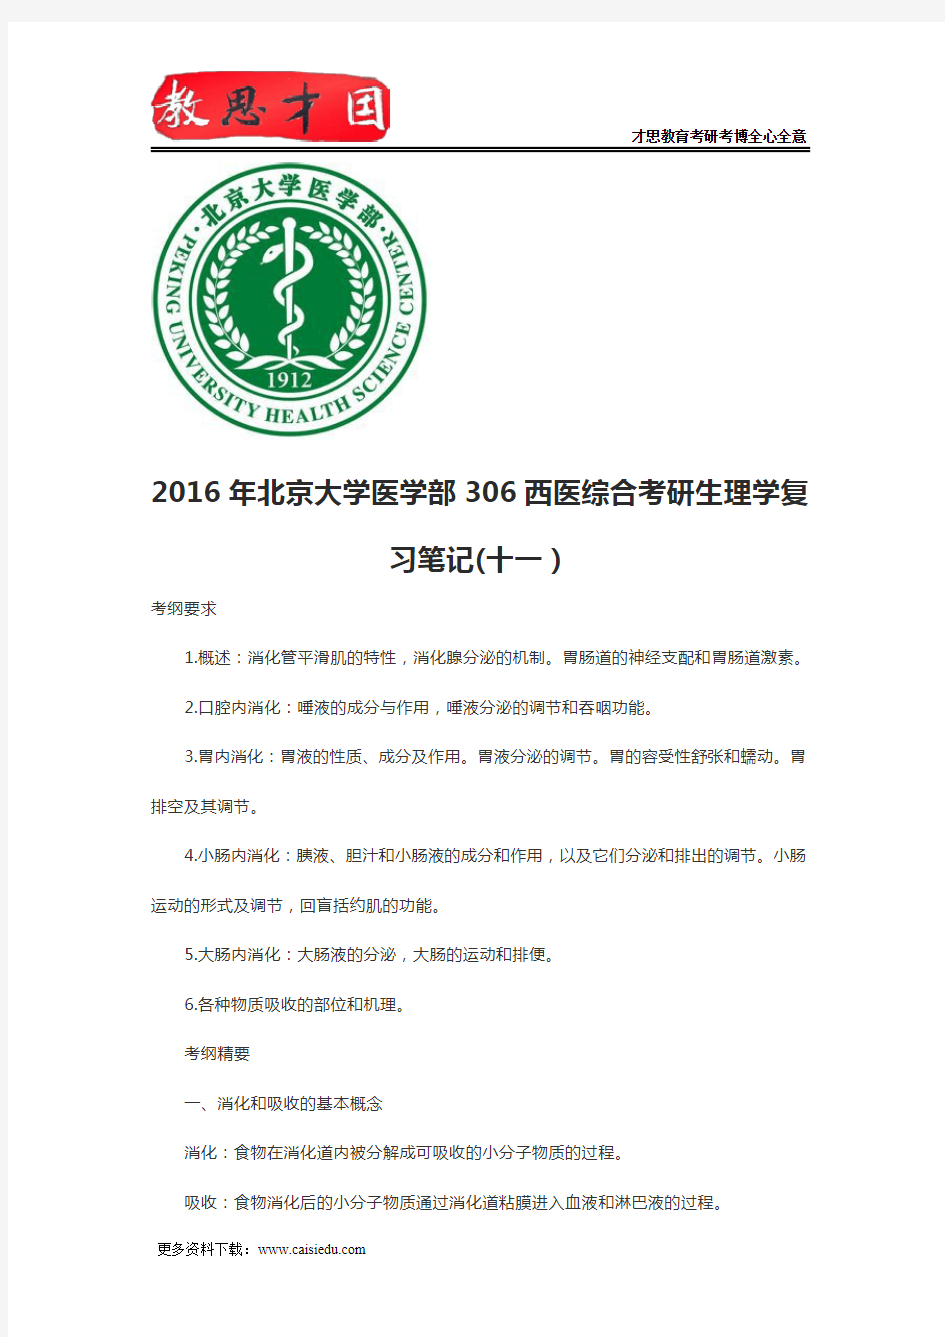 2016年北京大学医学部306西医综合考研生理学复习笔记(十一)